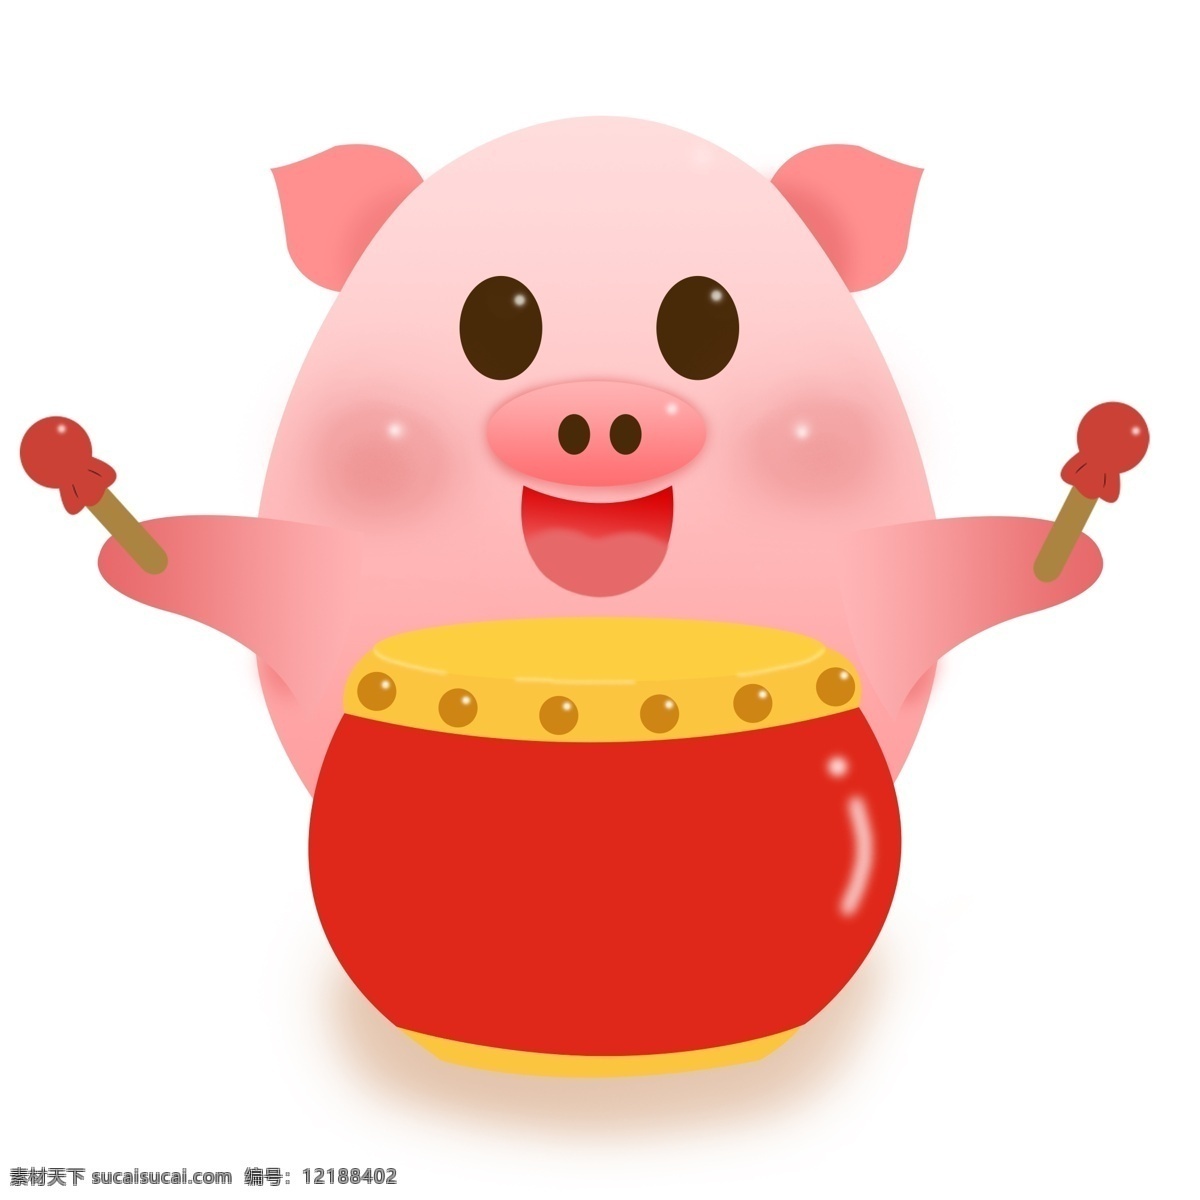 猪 打鼓 粉红 卡通 形象 商用 元素 可爱 ip 猪年 可商用